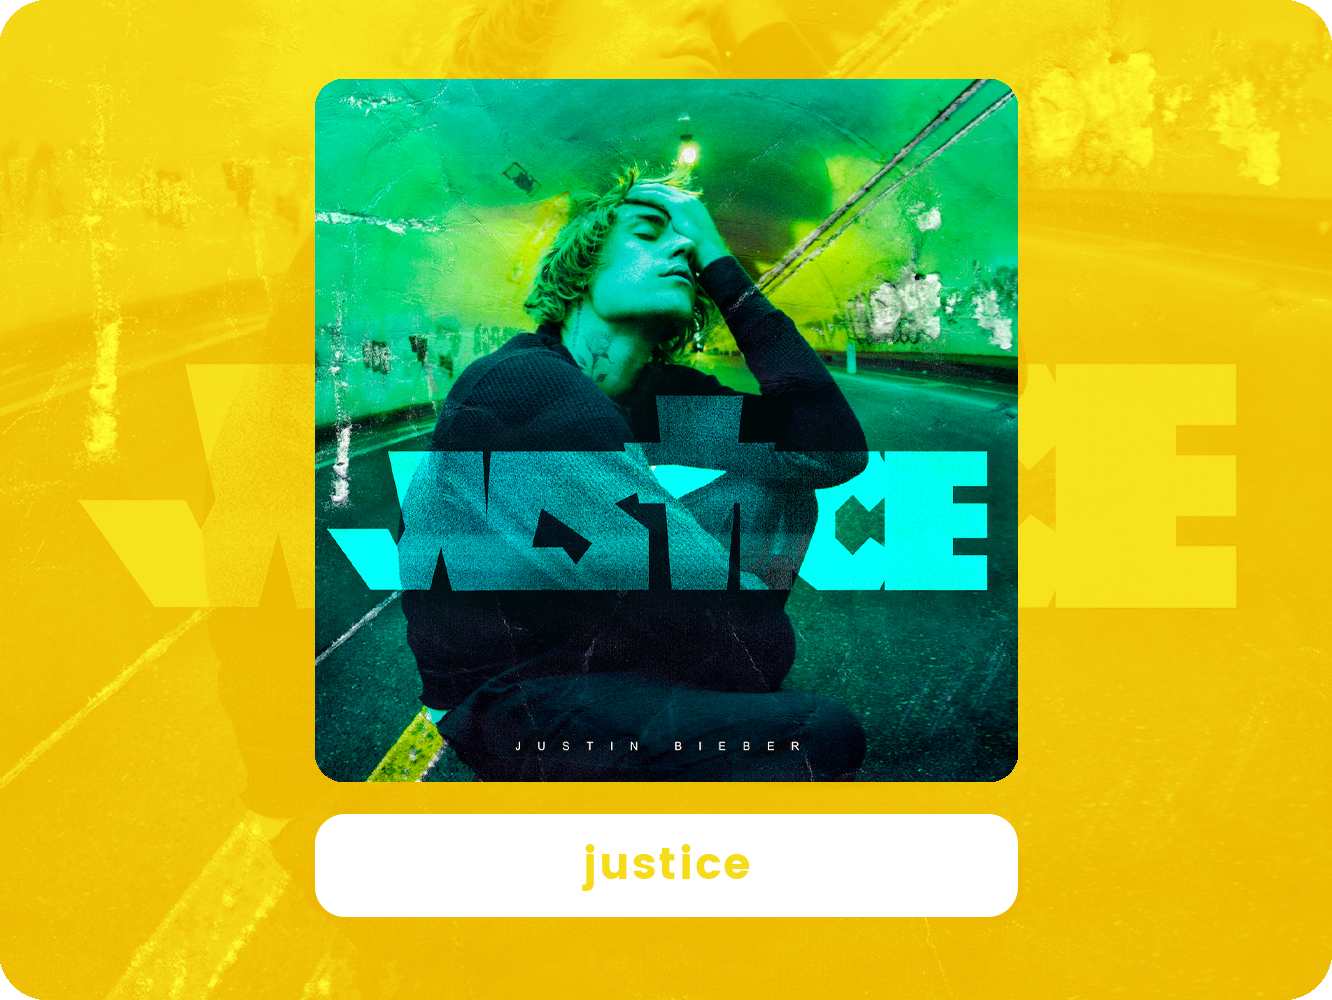  ‘Justice’ devuelve al pop a Justin Bieber, pero mantiene el mensaje ‘esperanzador’ del anterior álbum